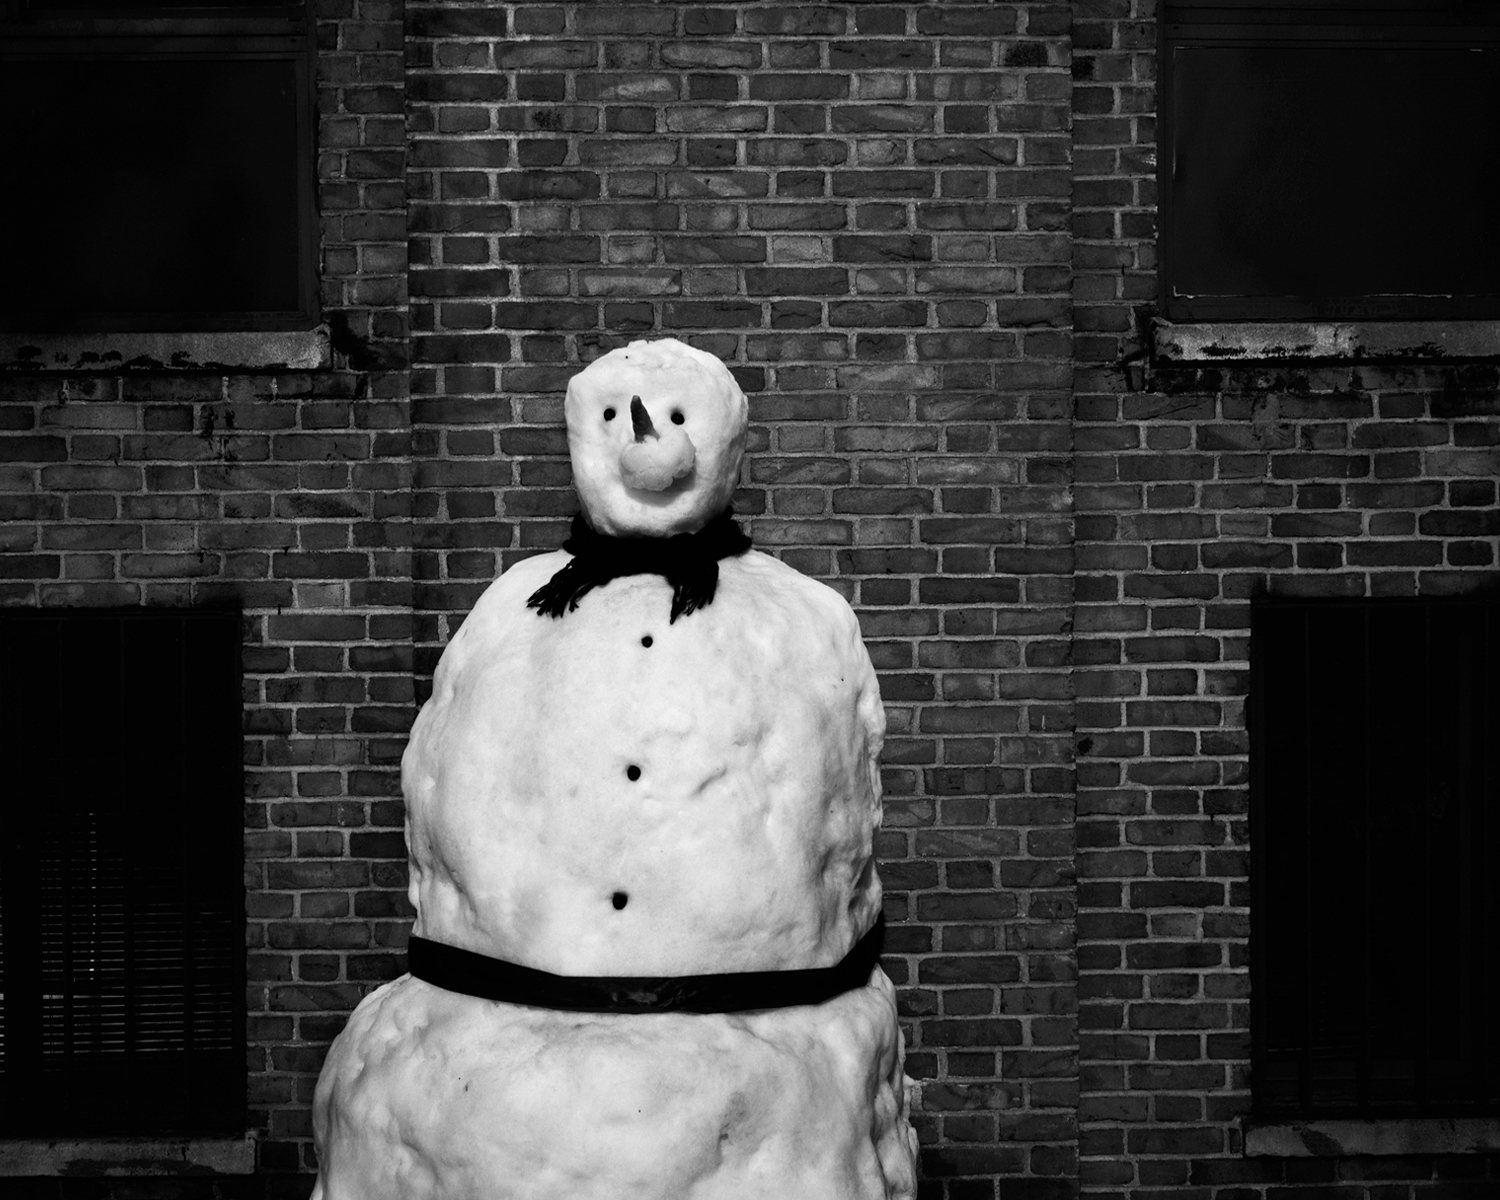 Uptown Snowman